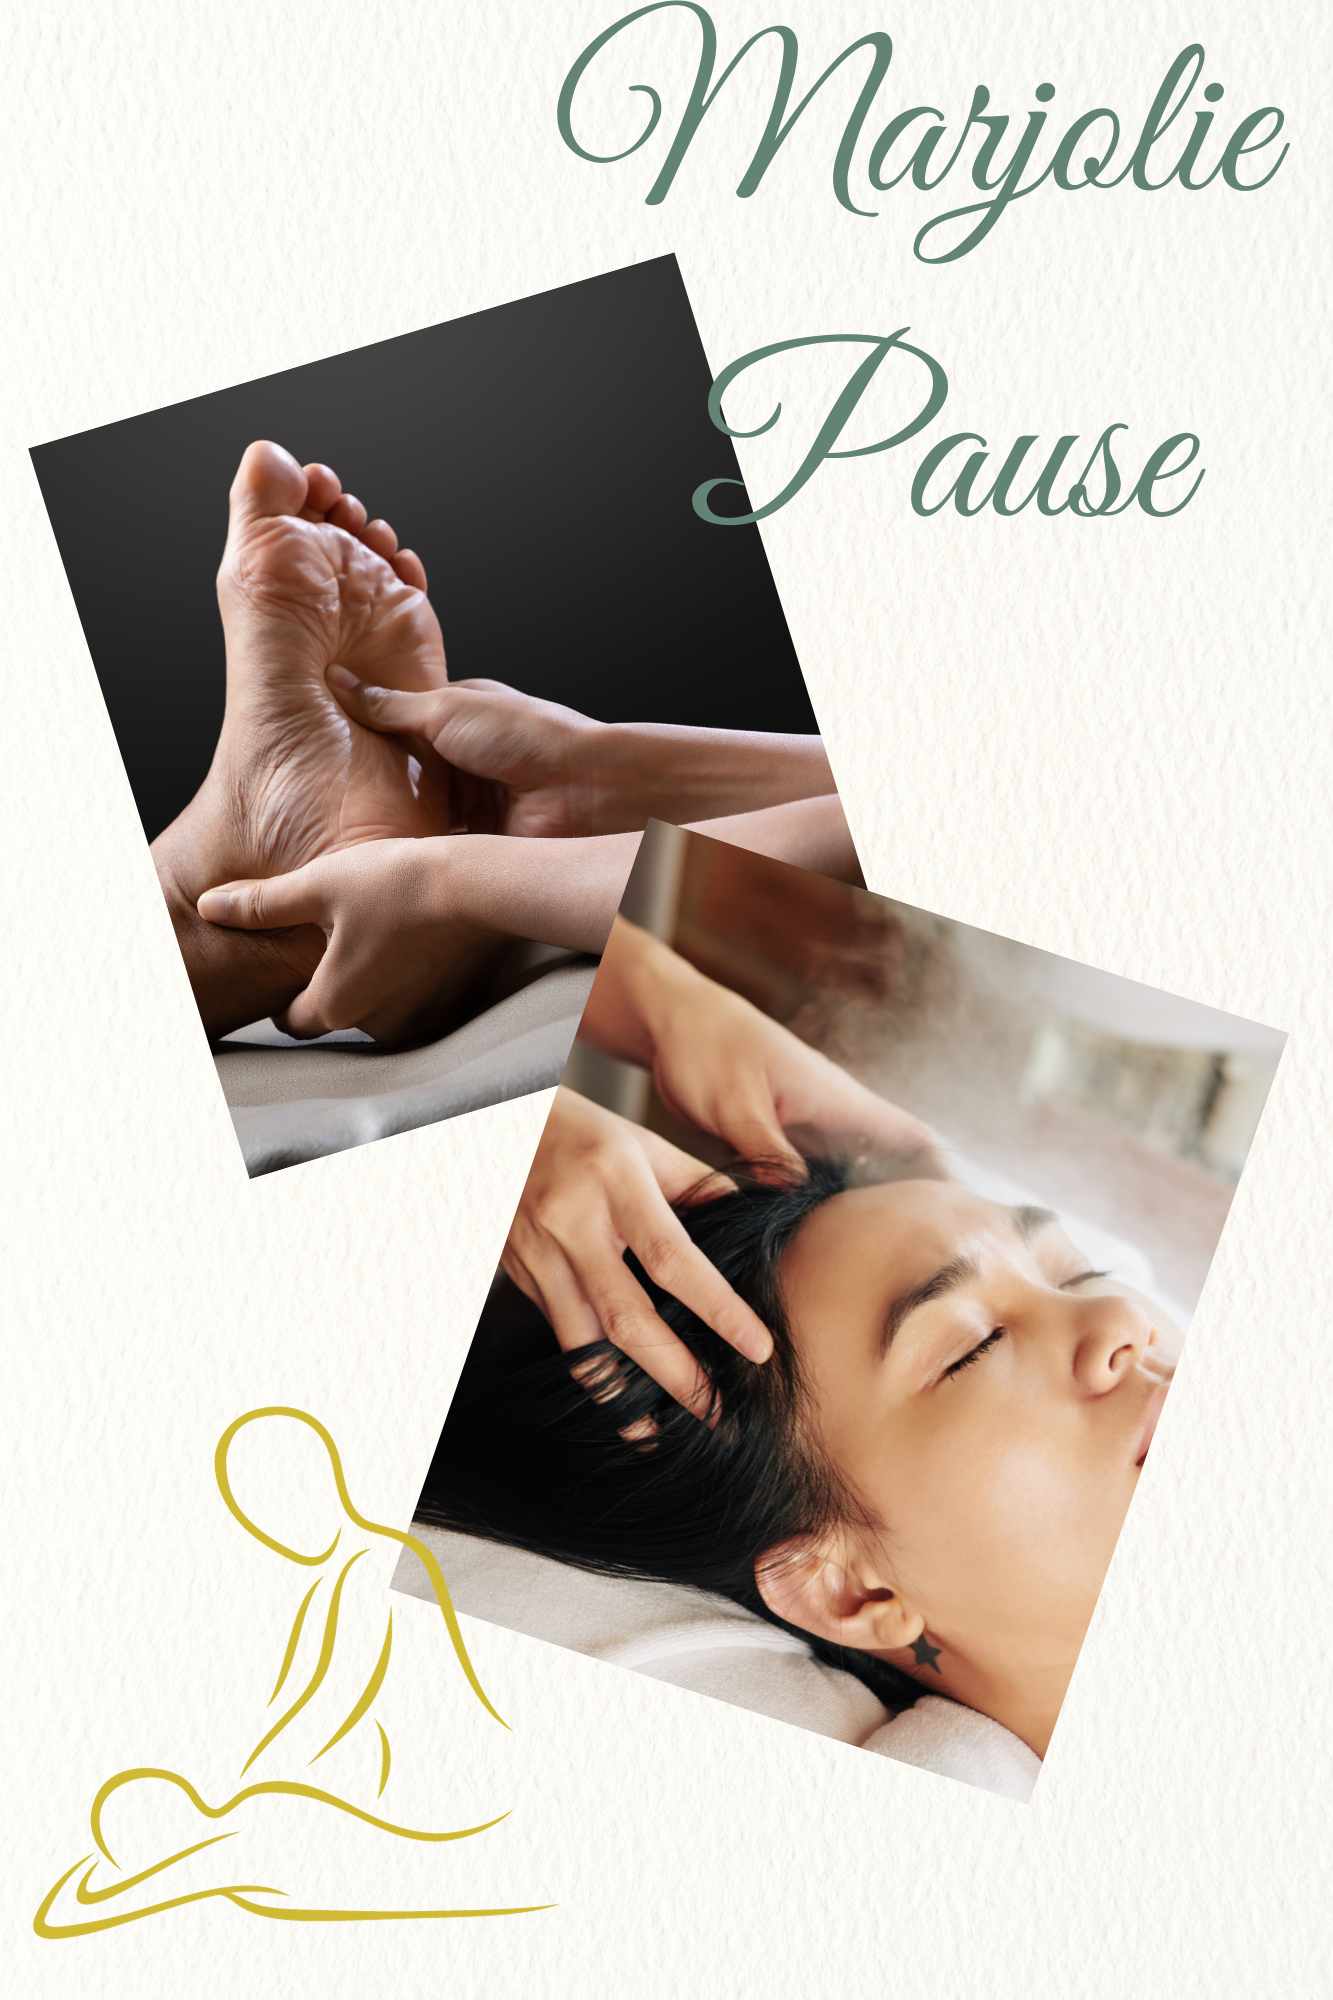 soin et thérapie chez marjolie pause salon de massage et détente à gardanne